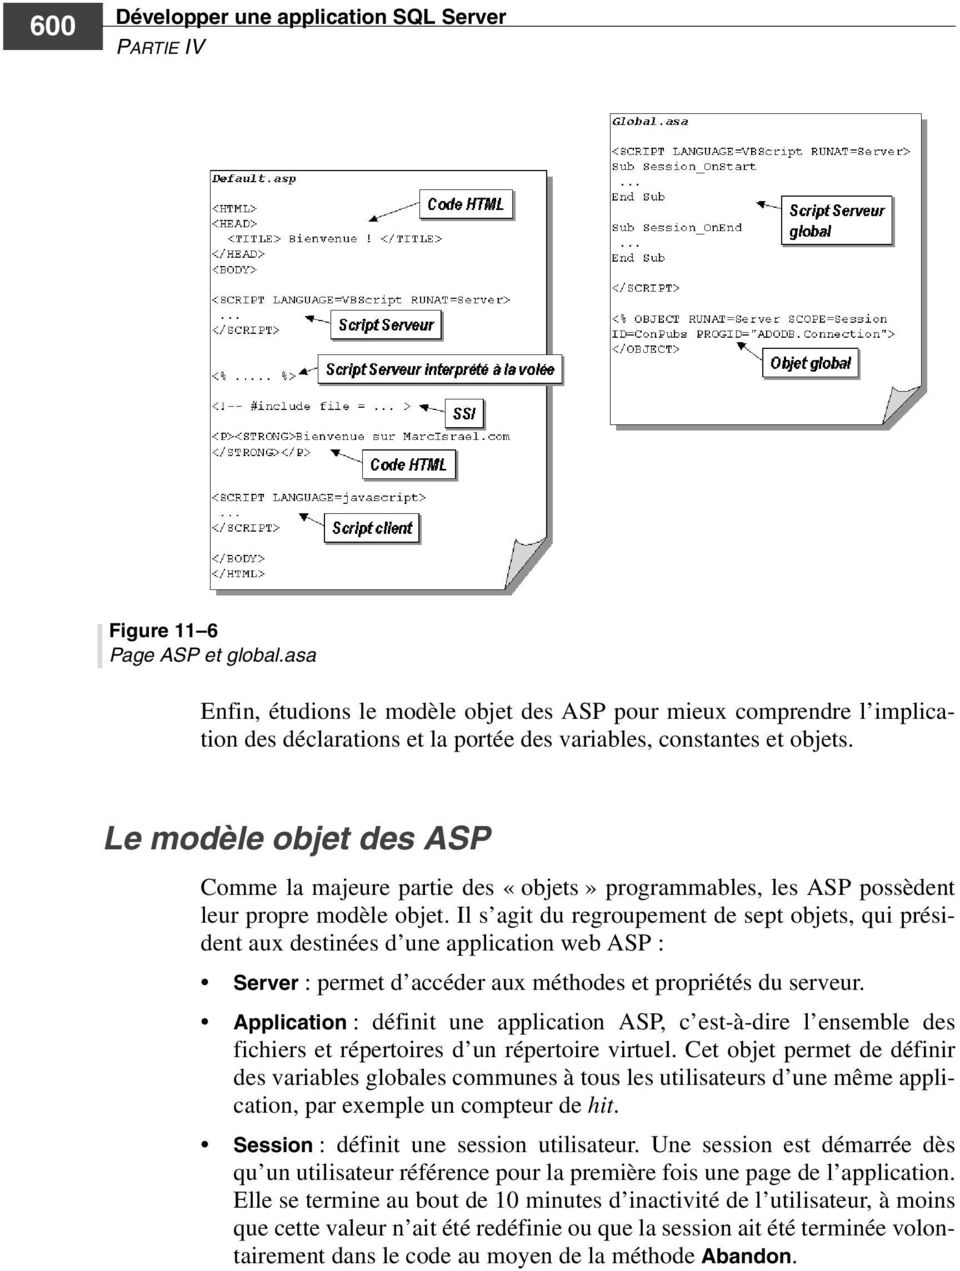 Le modèle objet des ASP Comme la majeure partie des «objets» programmables, les ASP possèdent leur propre modèle objet.